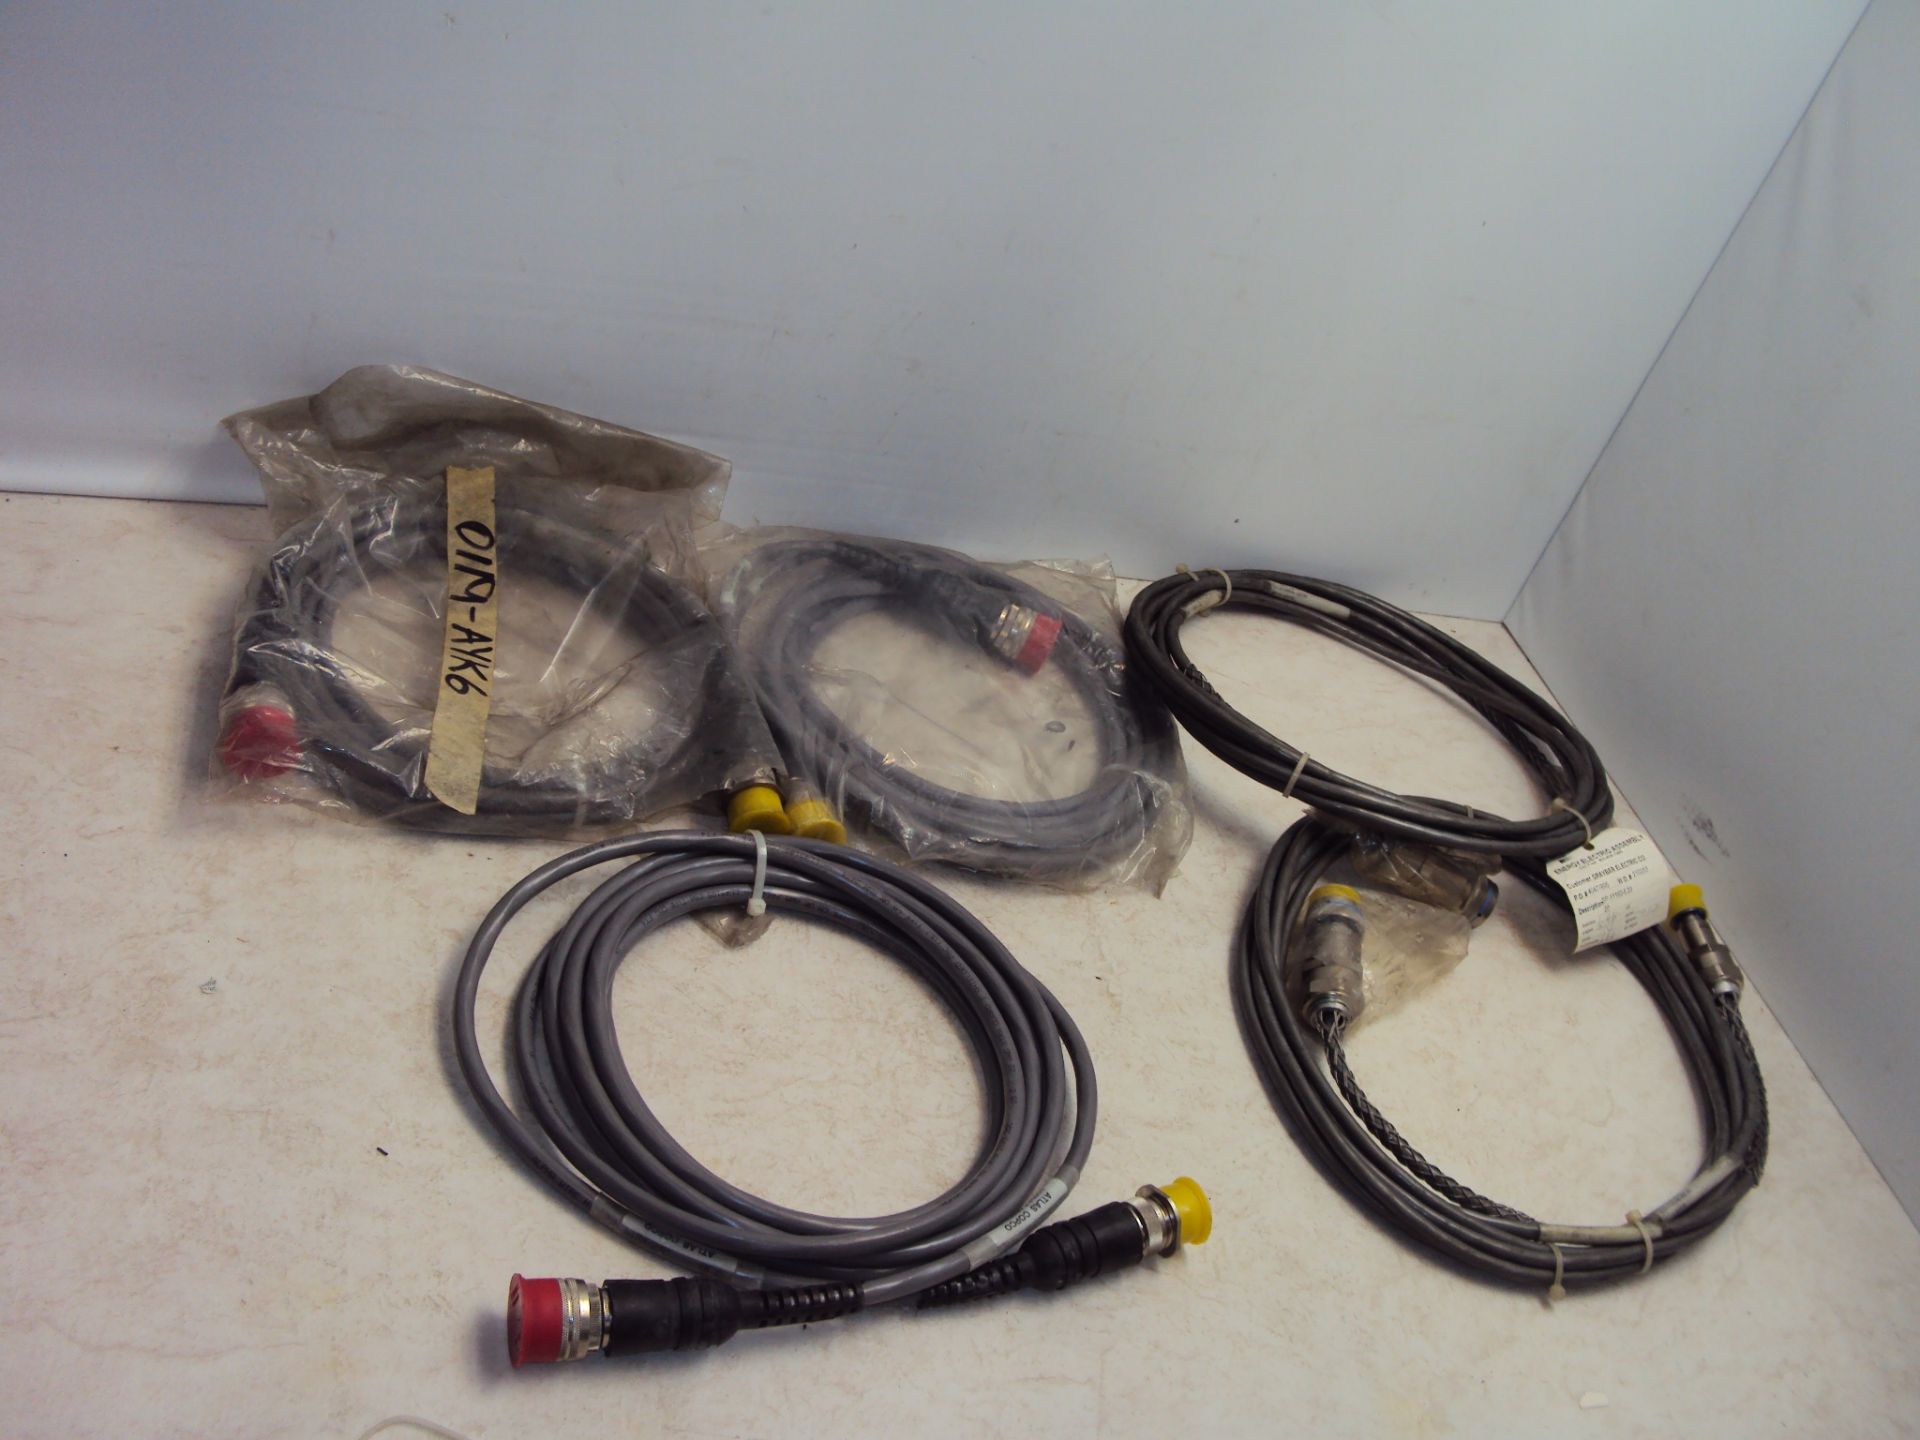 (5) Assorted Atlas Copco Connector Cables